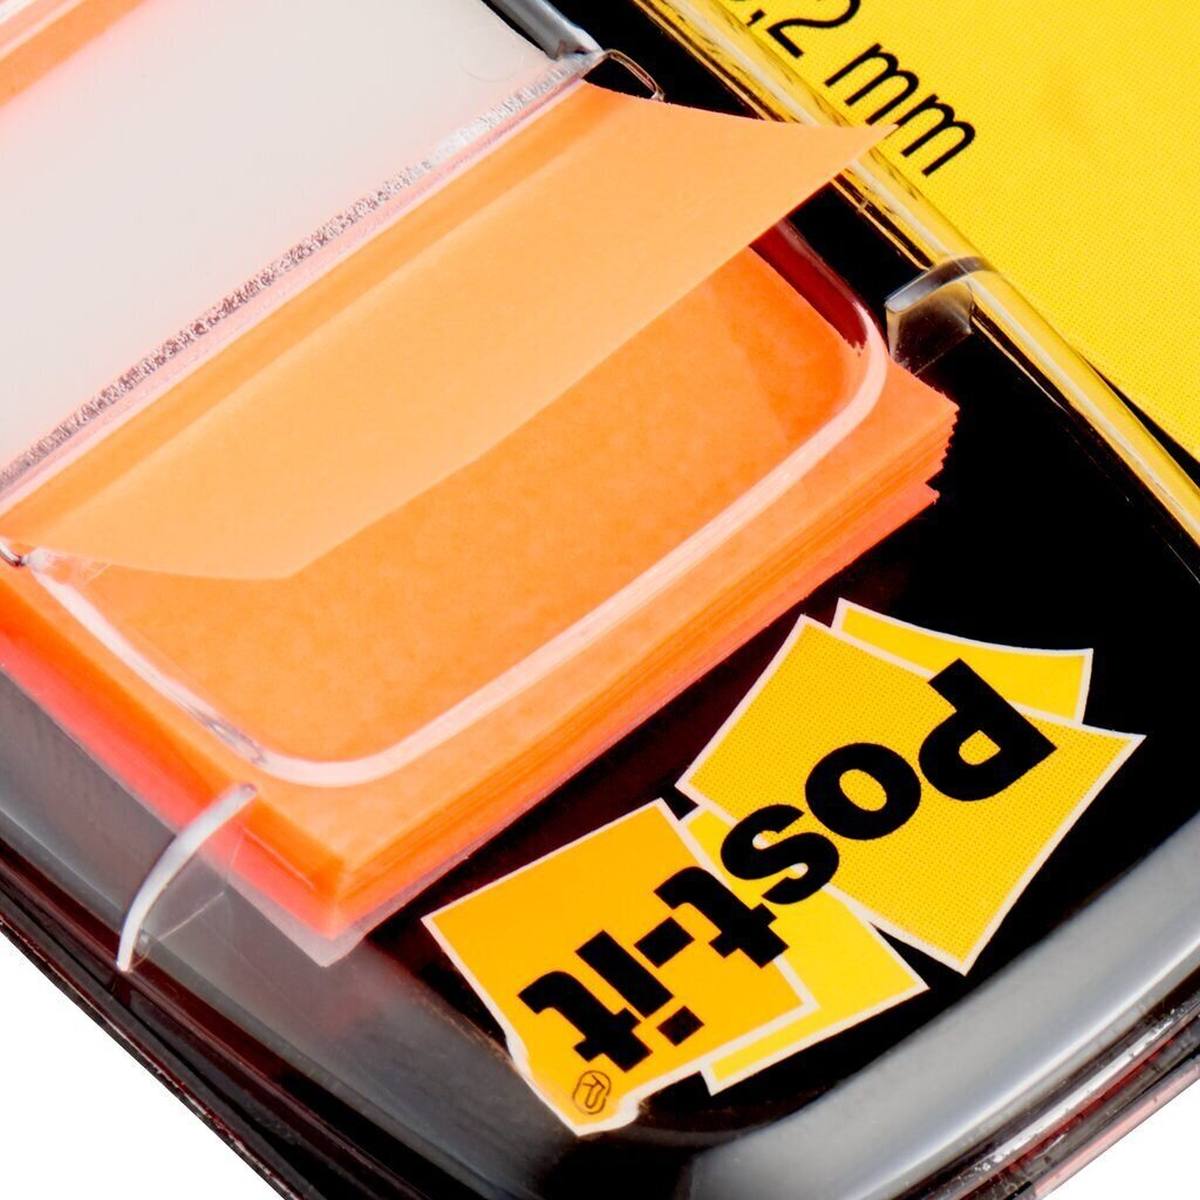 3M Post-it Index I680-4, 25,4 mm x 43,2 mm, orange, 1 x 50 bandes adhésives en distributeur